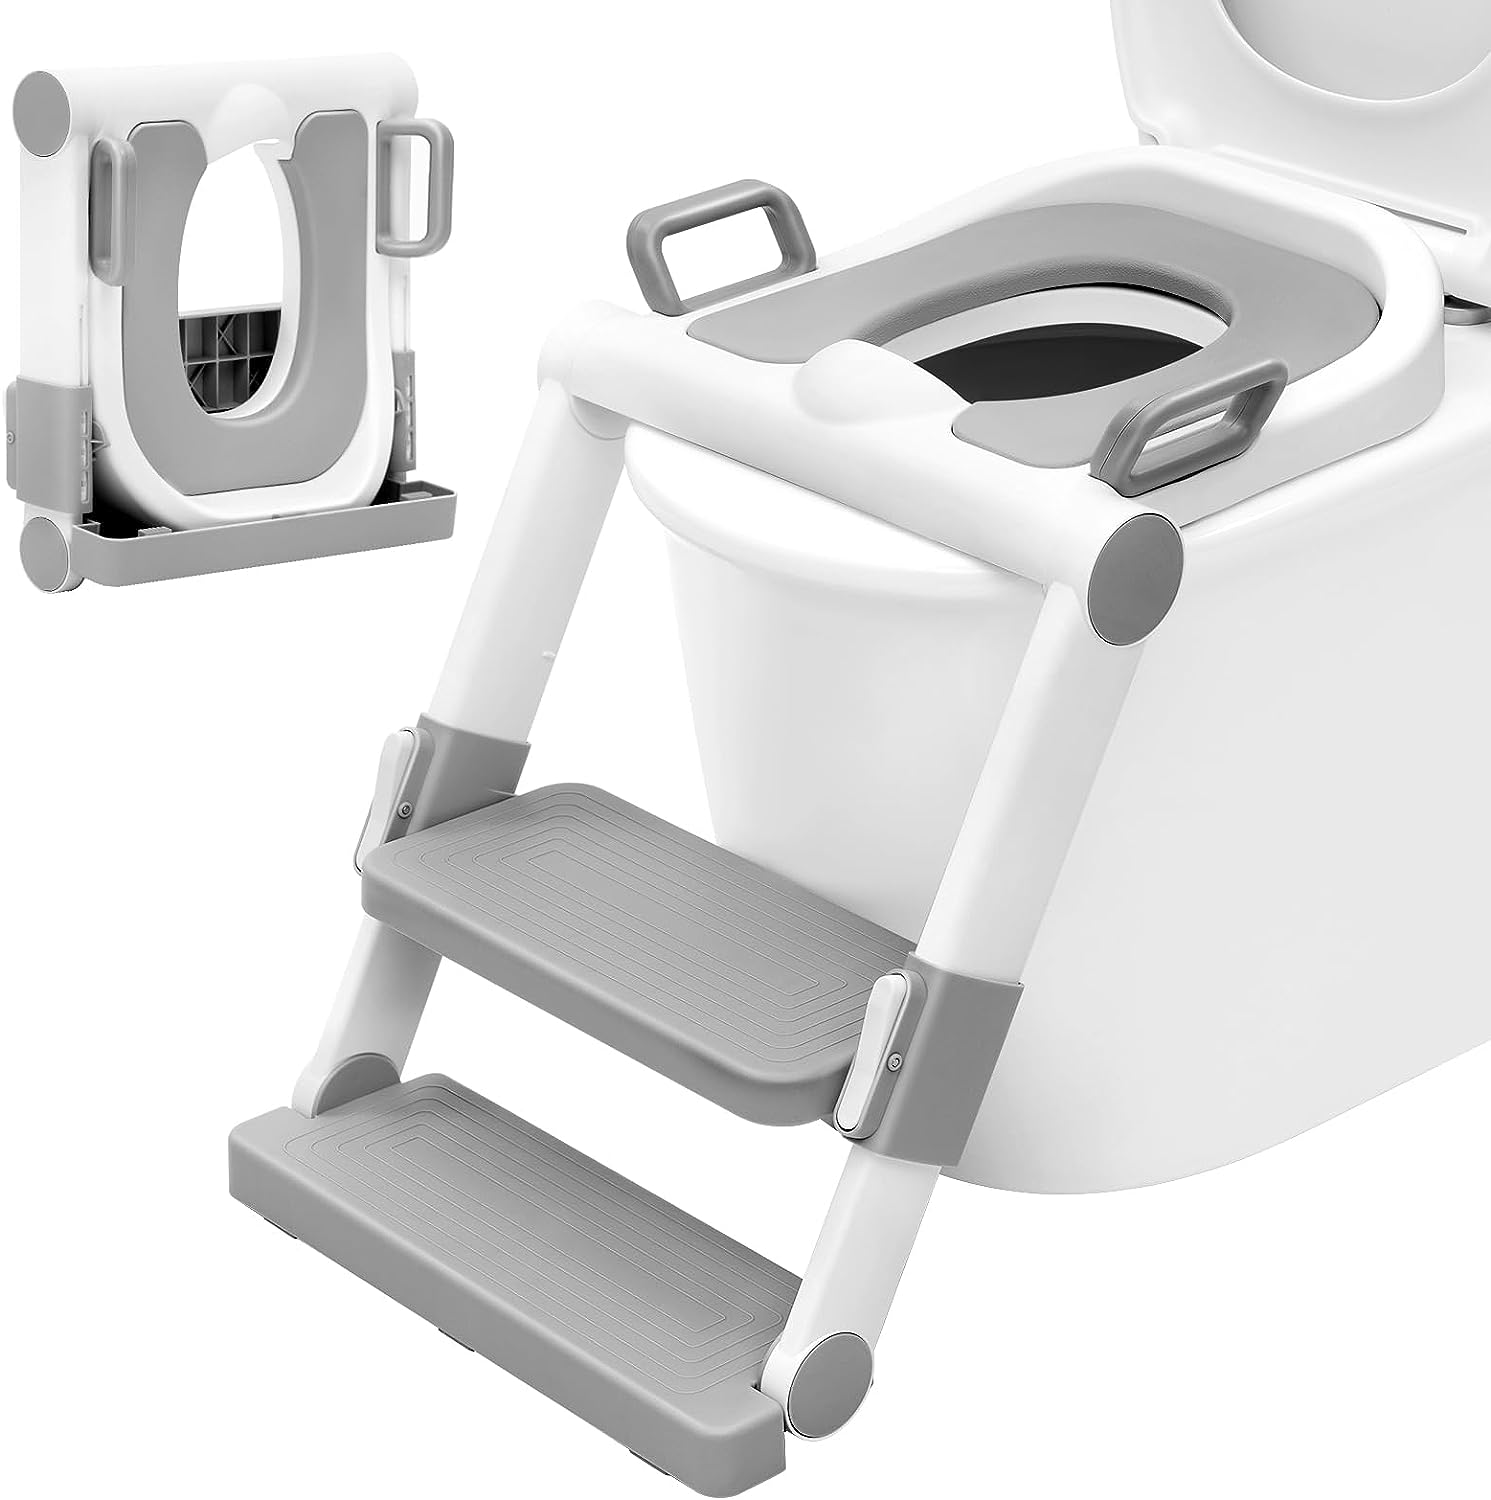 Repus - Siège de toilette Panda - Apprentissage de la propreté